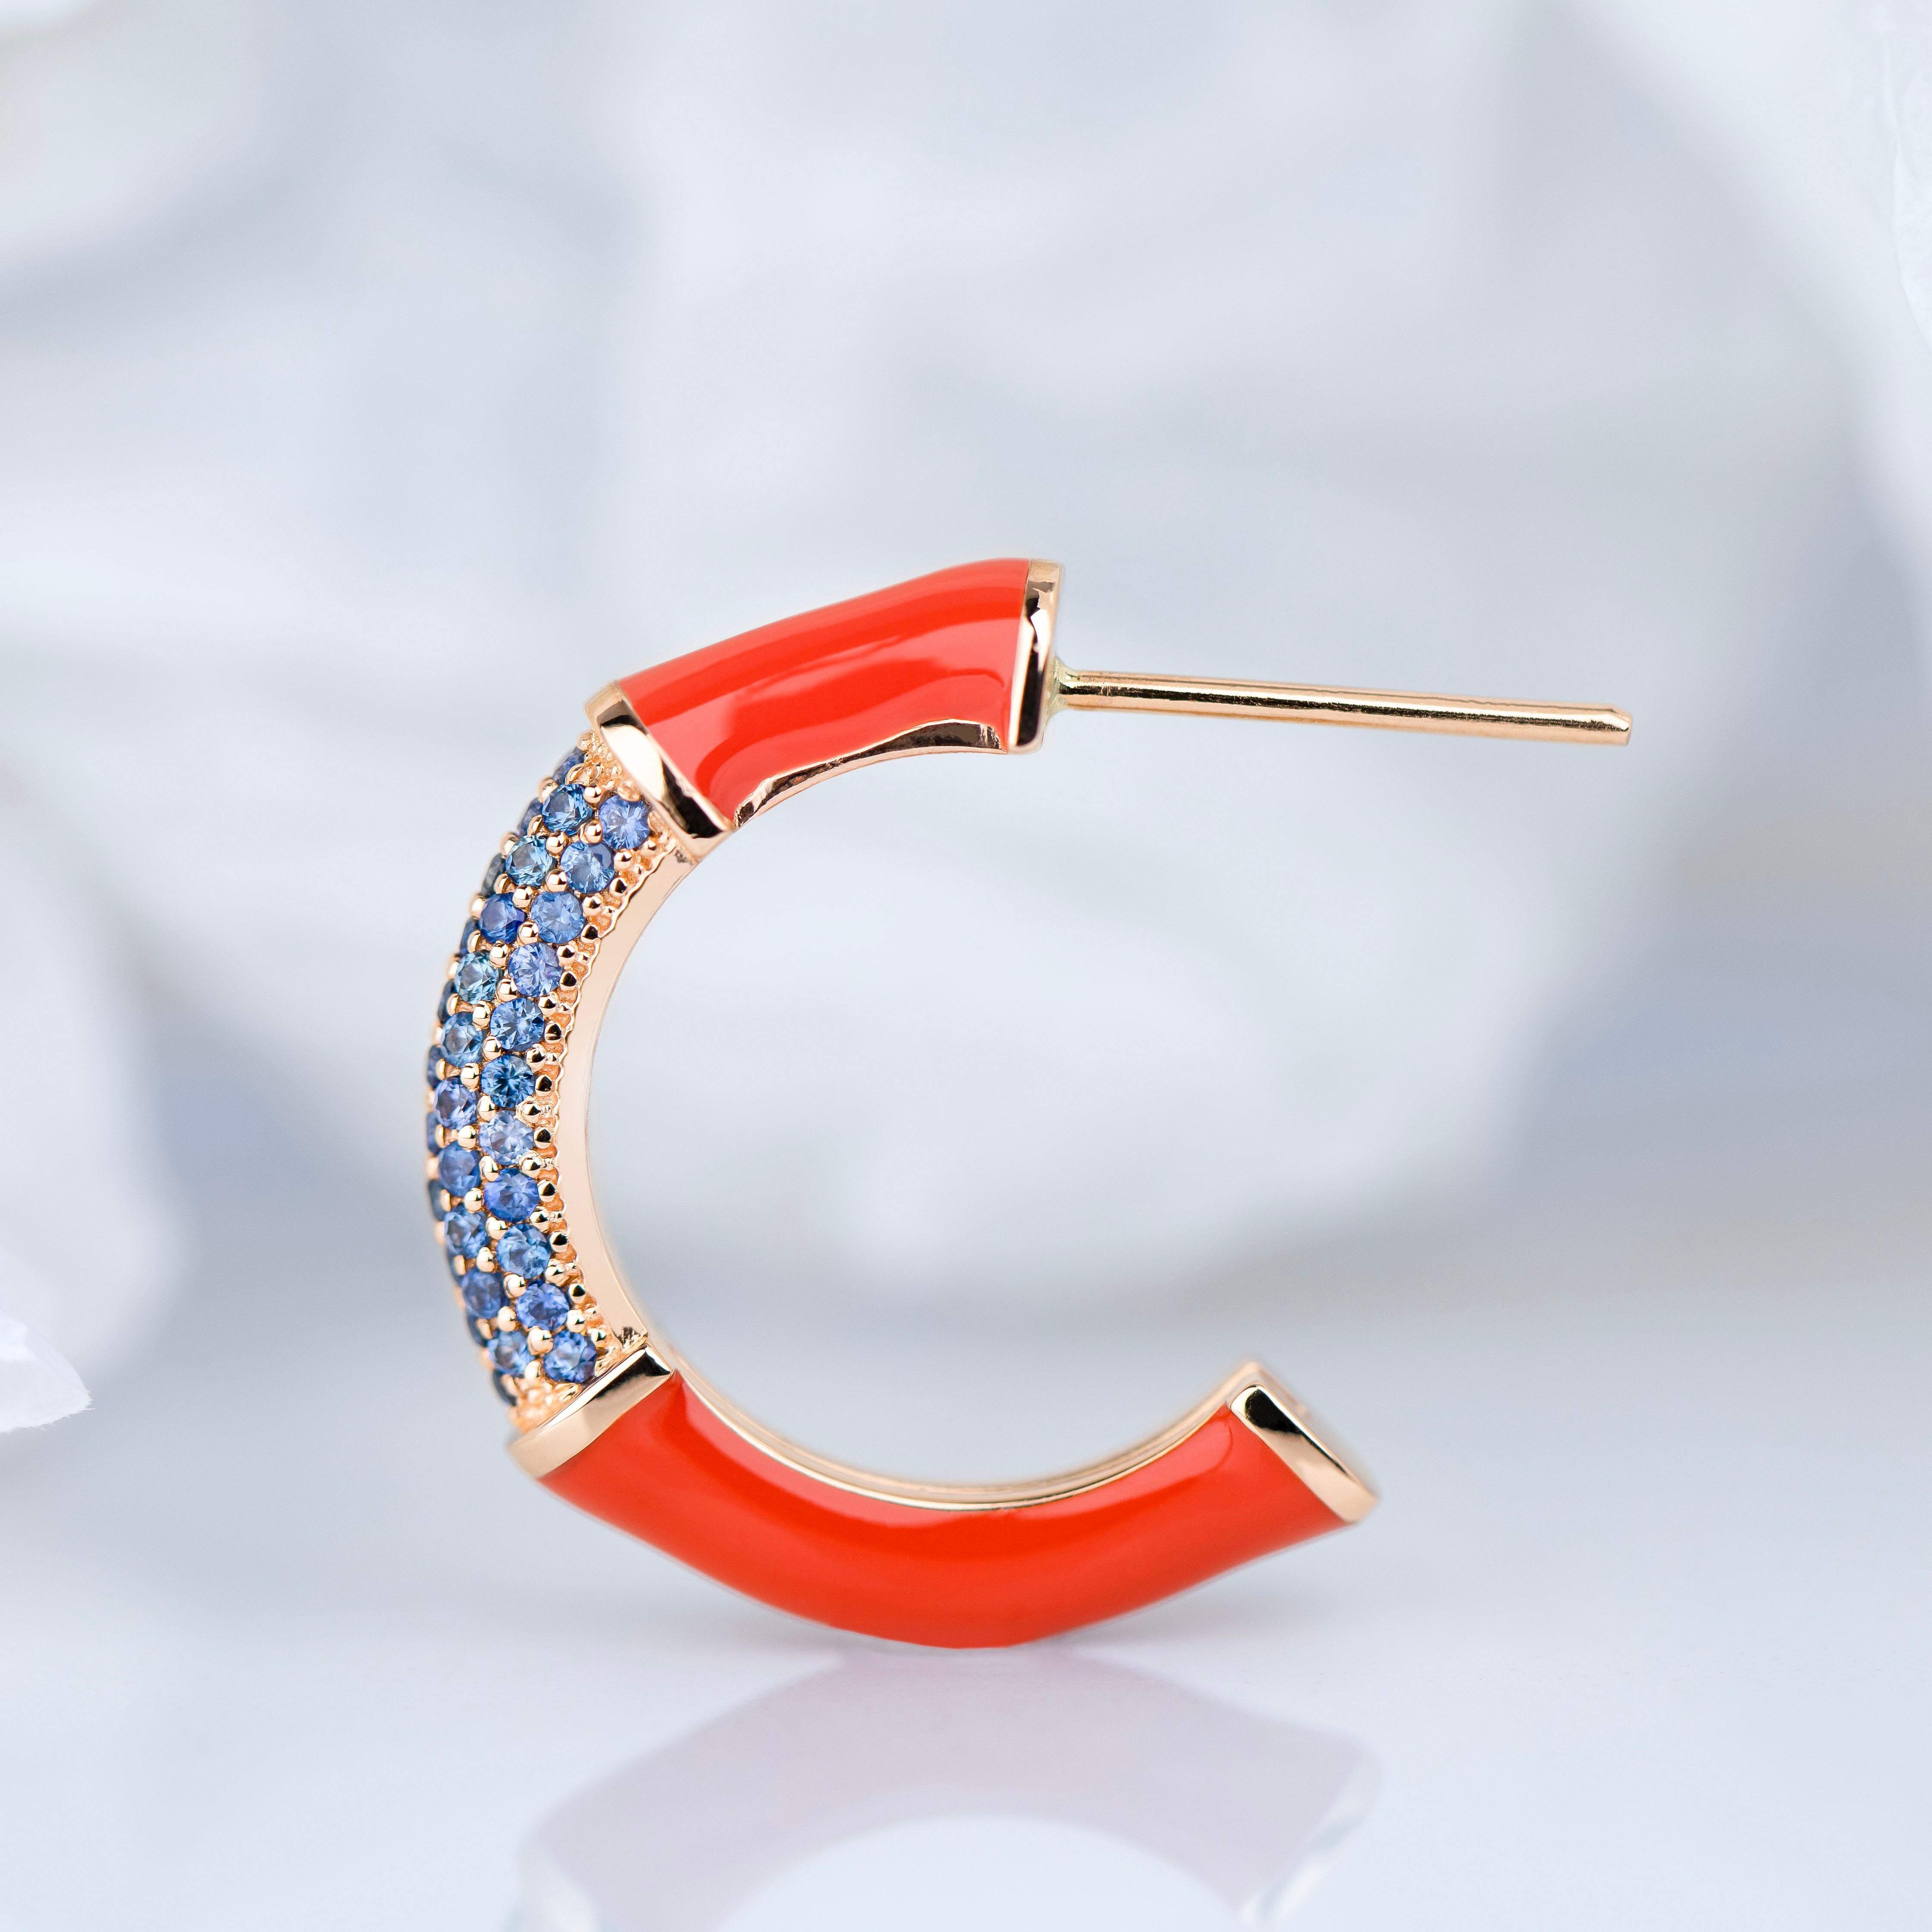 Art Deco Stil Design Saphir Stein Gold Ohrringe, Bumble Colors Ohrringe

Dieser Ring ist aus hochwertigen MATERIALEN und in hervorragender handwerklicher Qualität gefertigt. Ich garantiere für die Qualitätssicherung meiner handwerklichen Leistungen